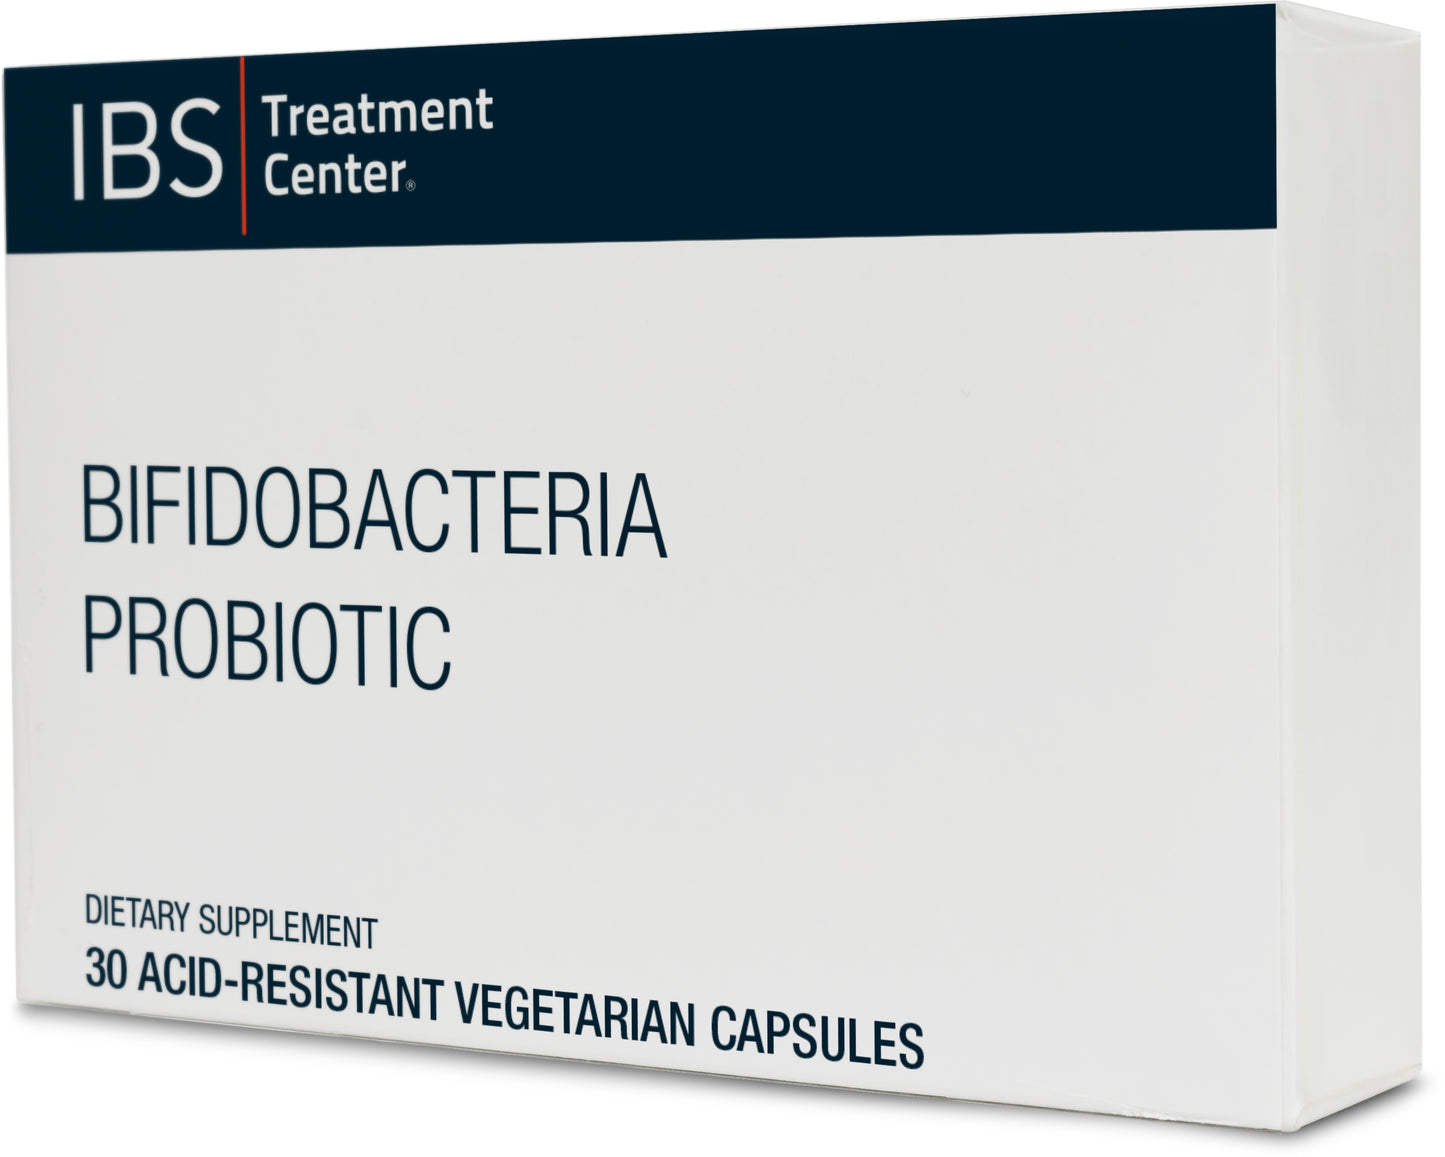 Bifidobacteria Probiotic